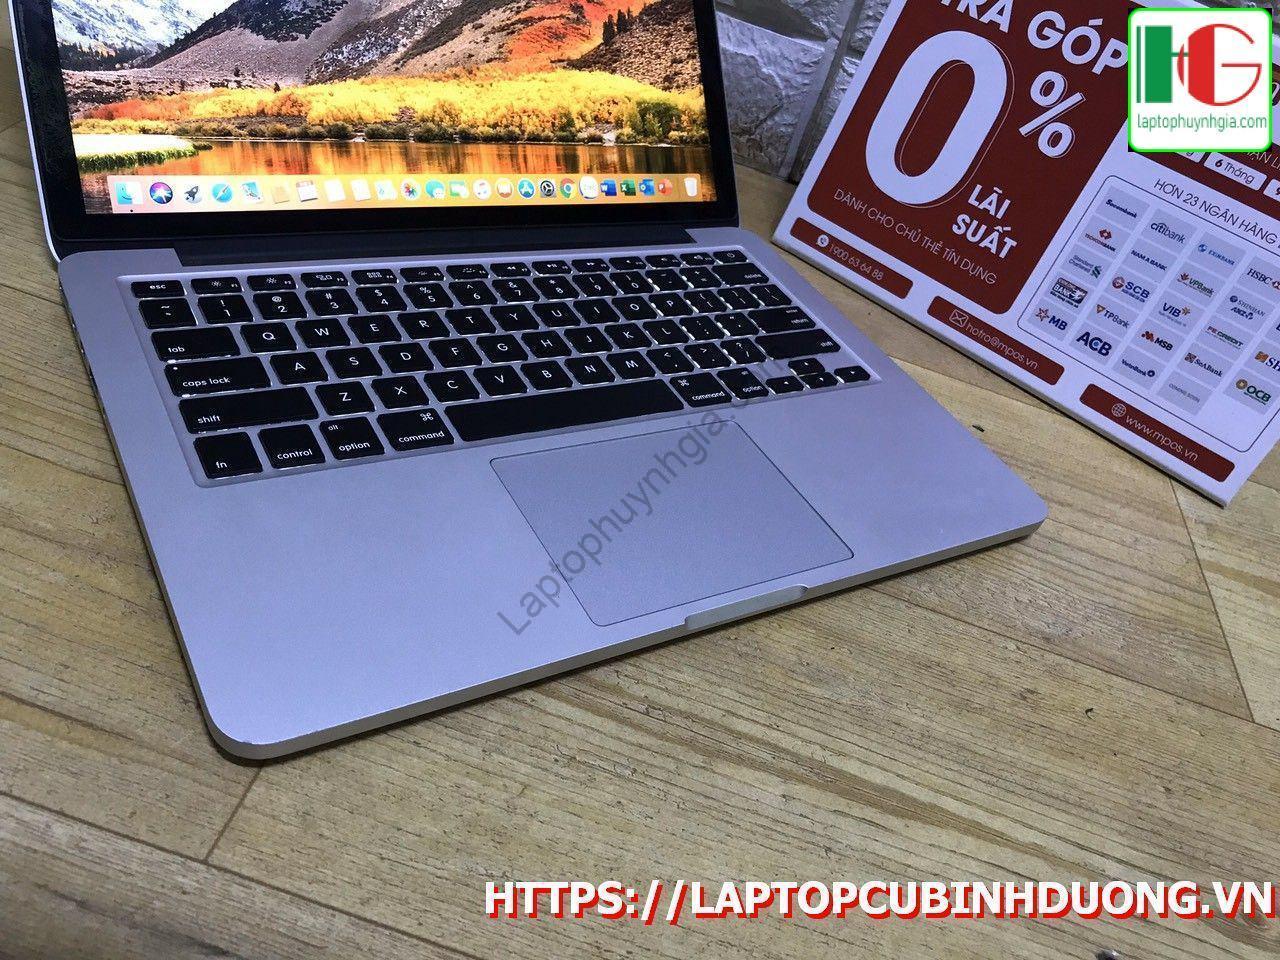 Laptop Macbook Pro 20150i55 Ram8g Ssd 128g Laptopcubinhduong.vn 1 Copy [kích Thước Gốc] Result